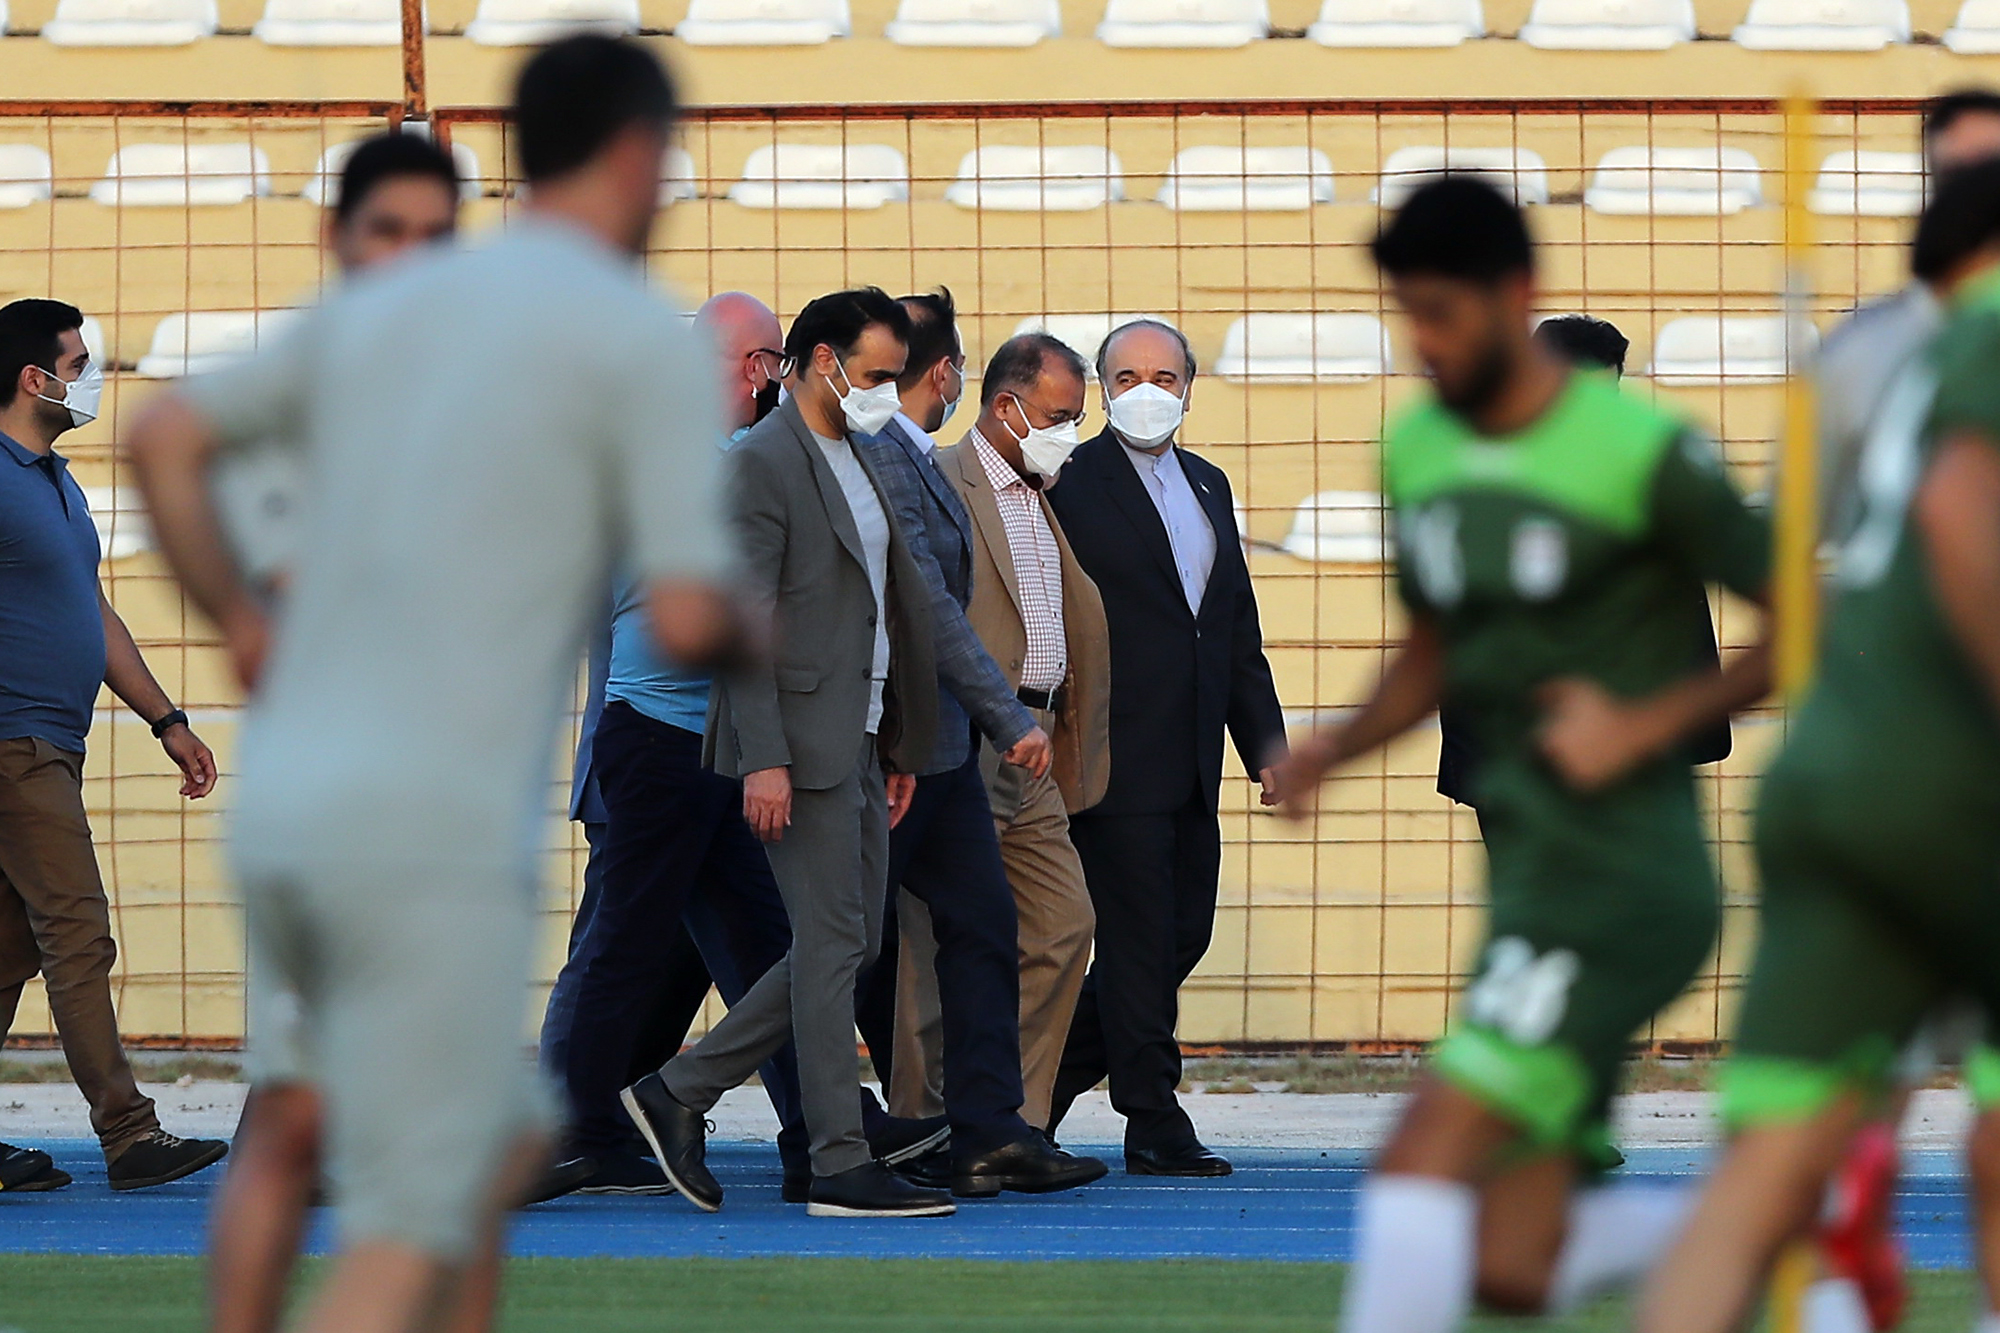 آخرین تمرین تیم ملی فوتبال در کیش